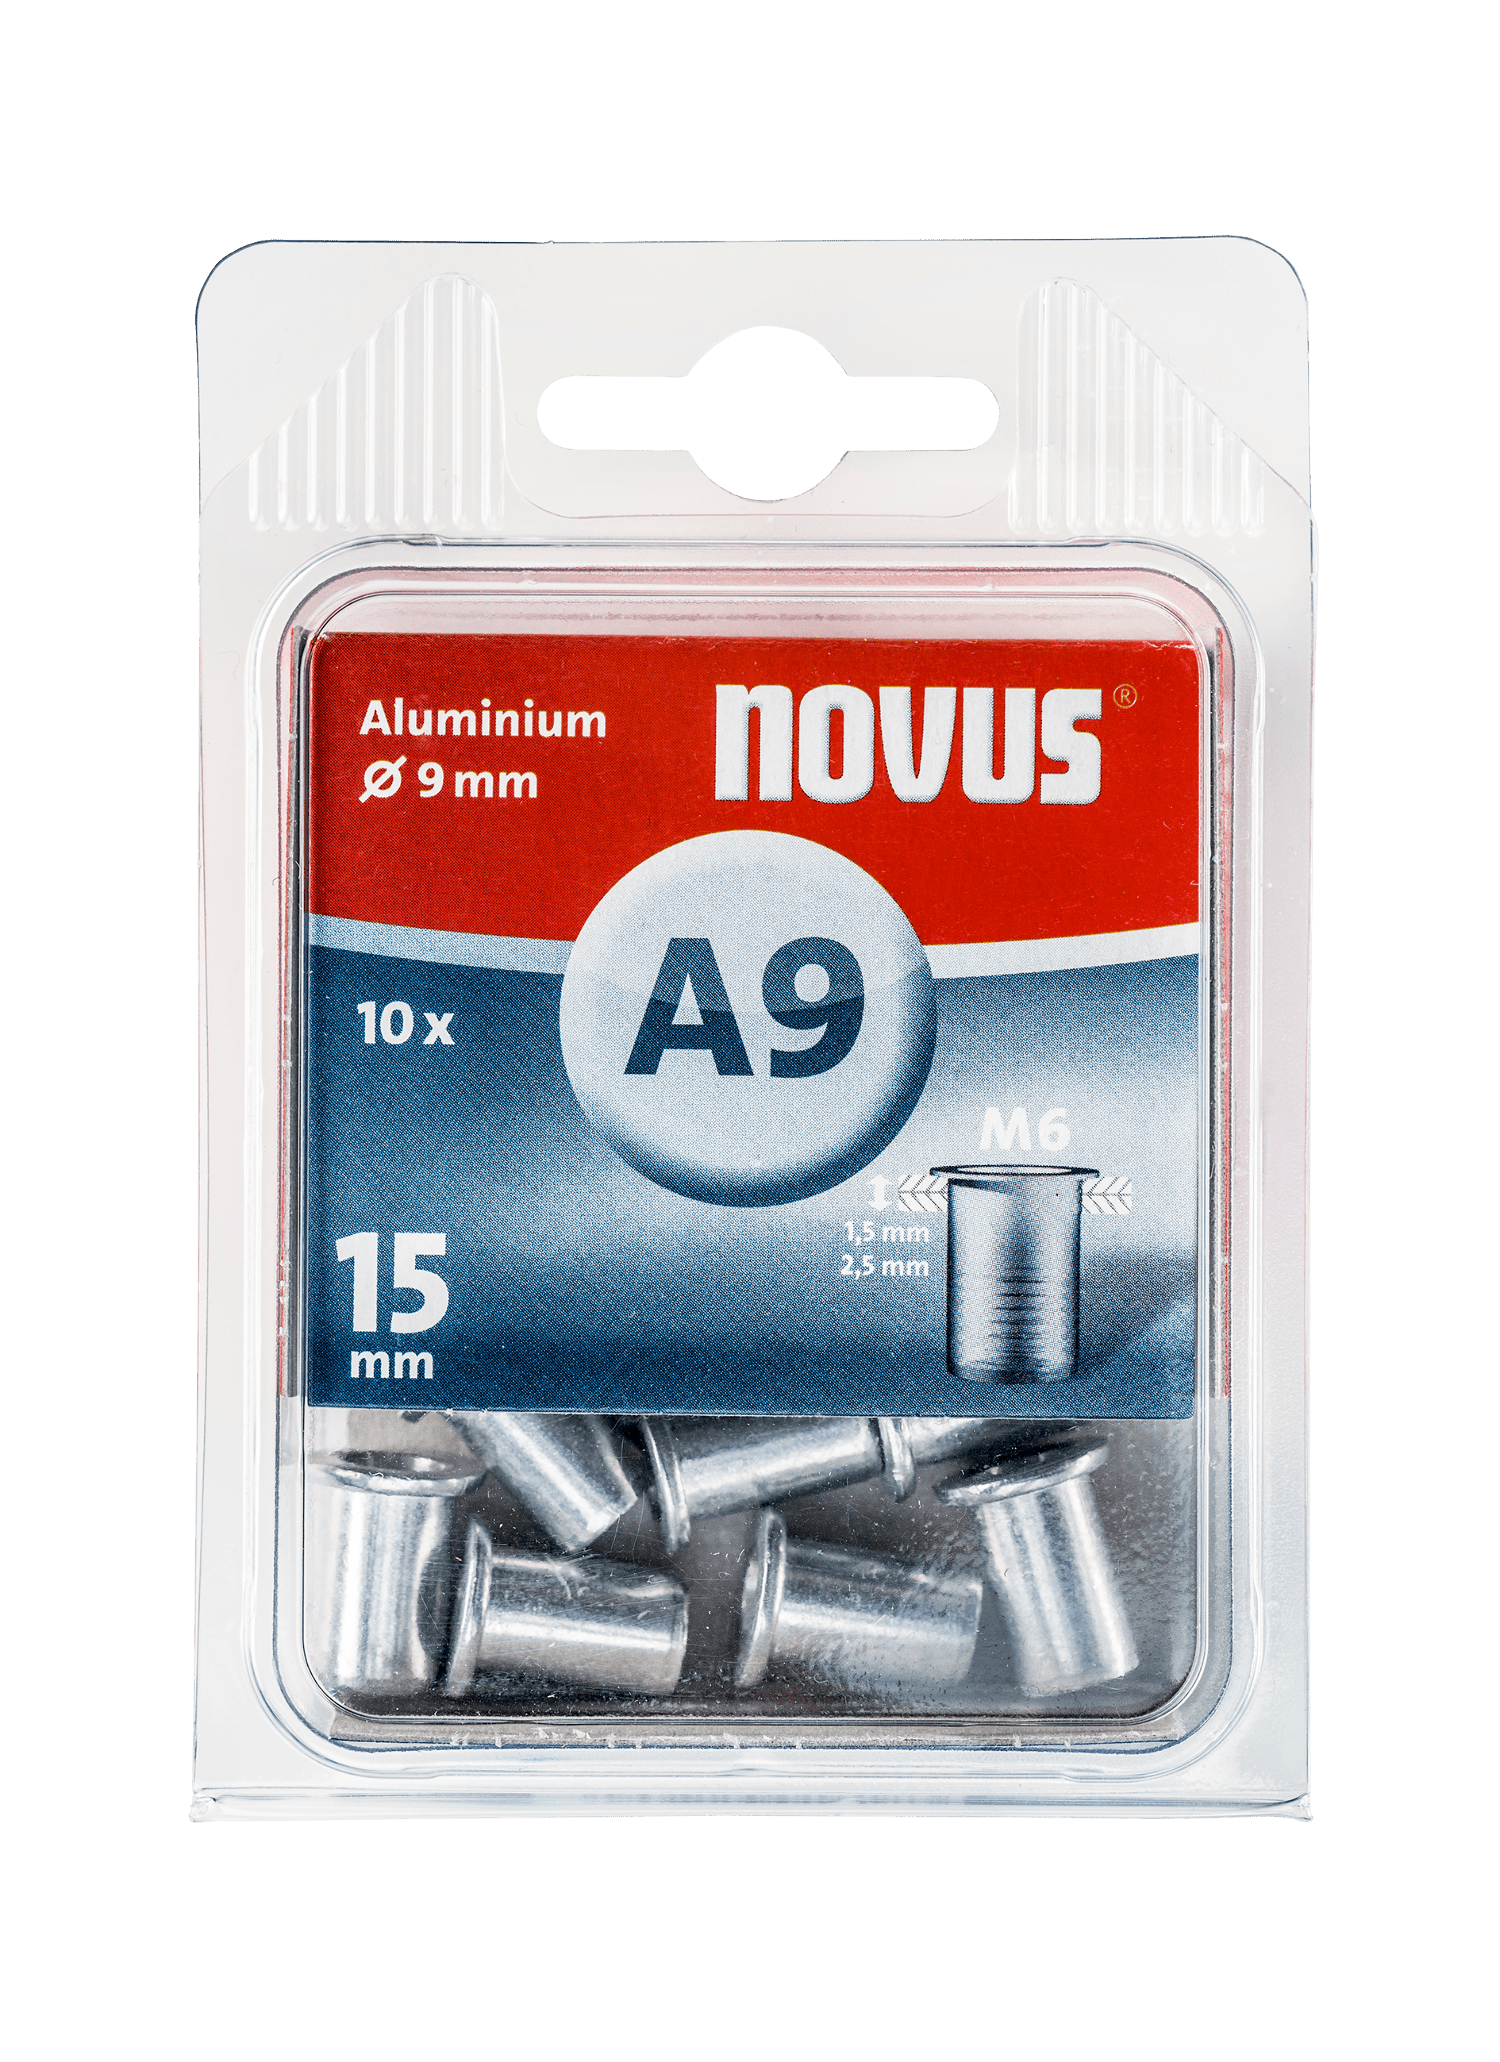 NOVUS Aluminium rivet nut Type A9 M6